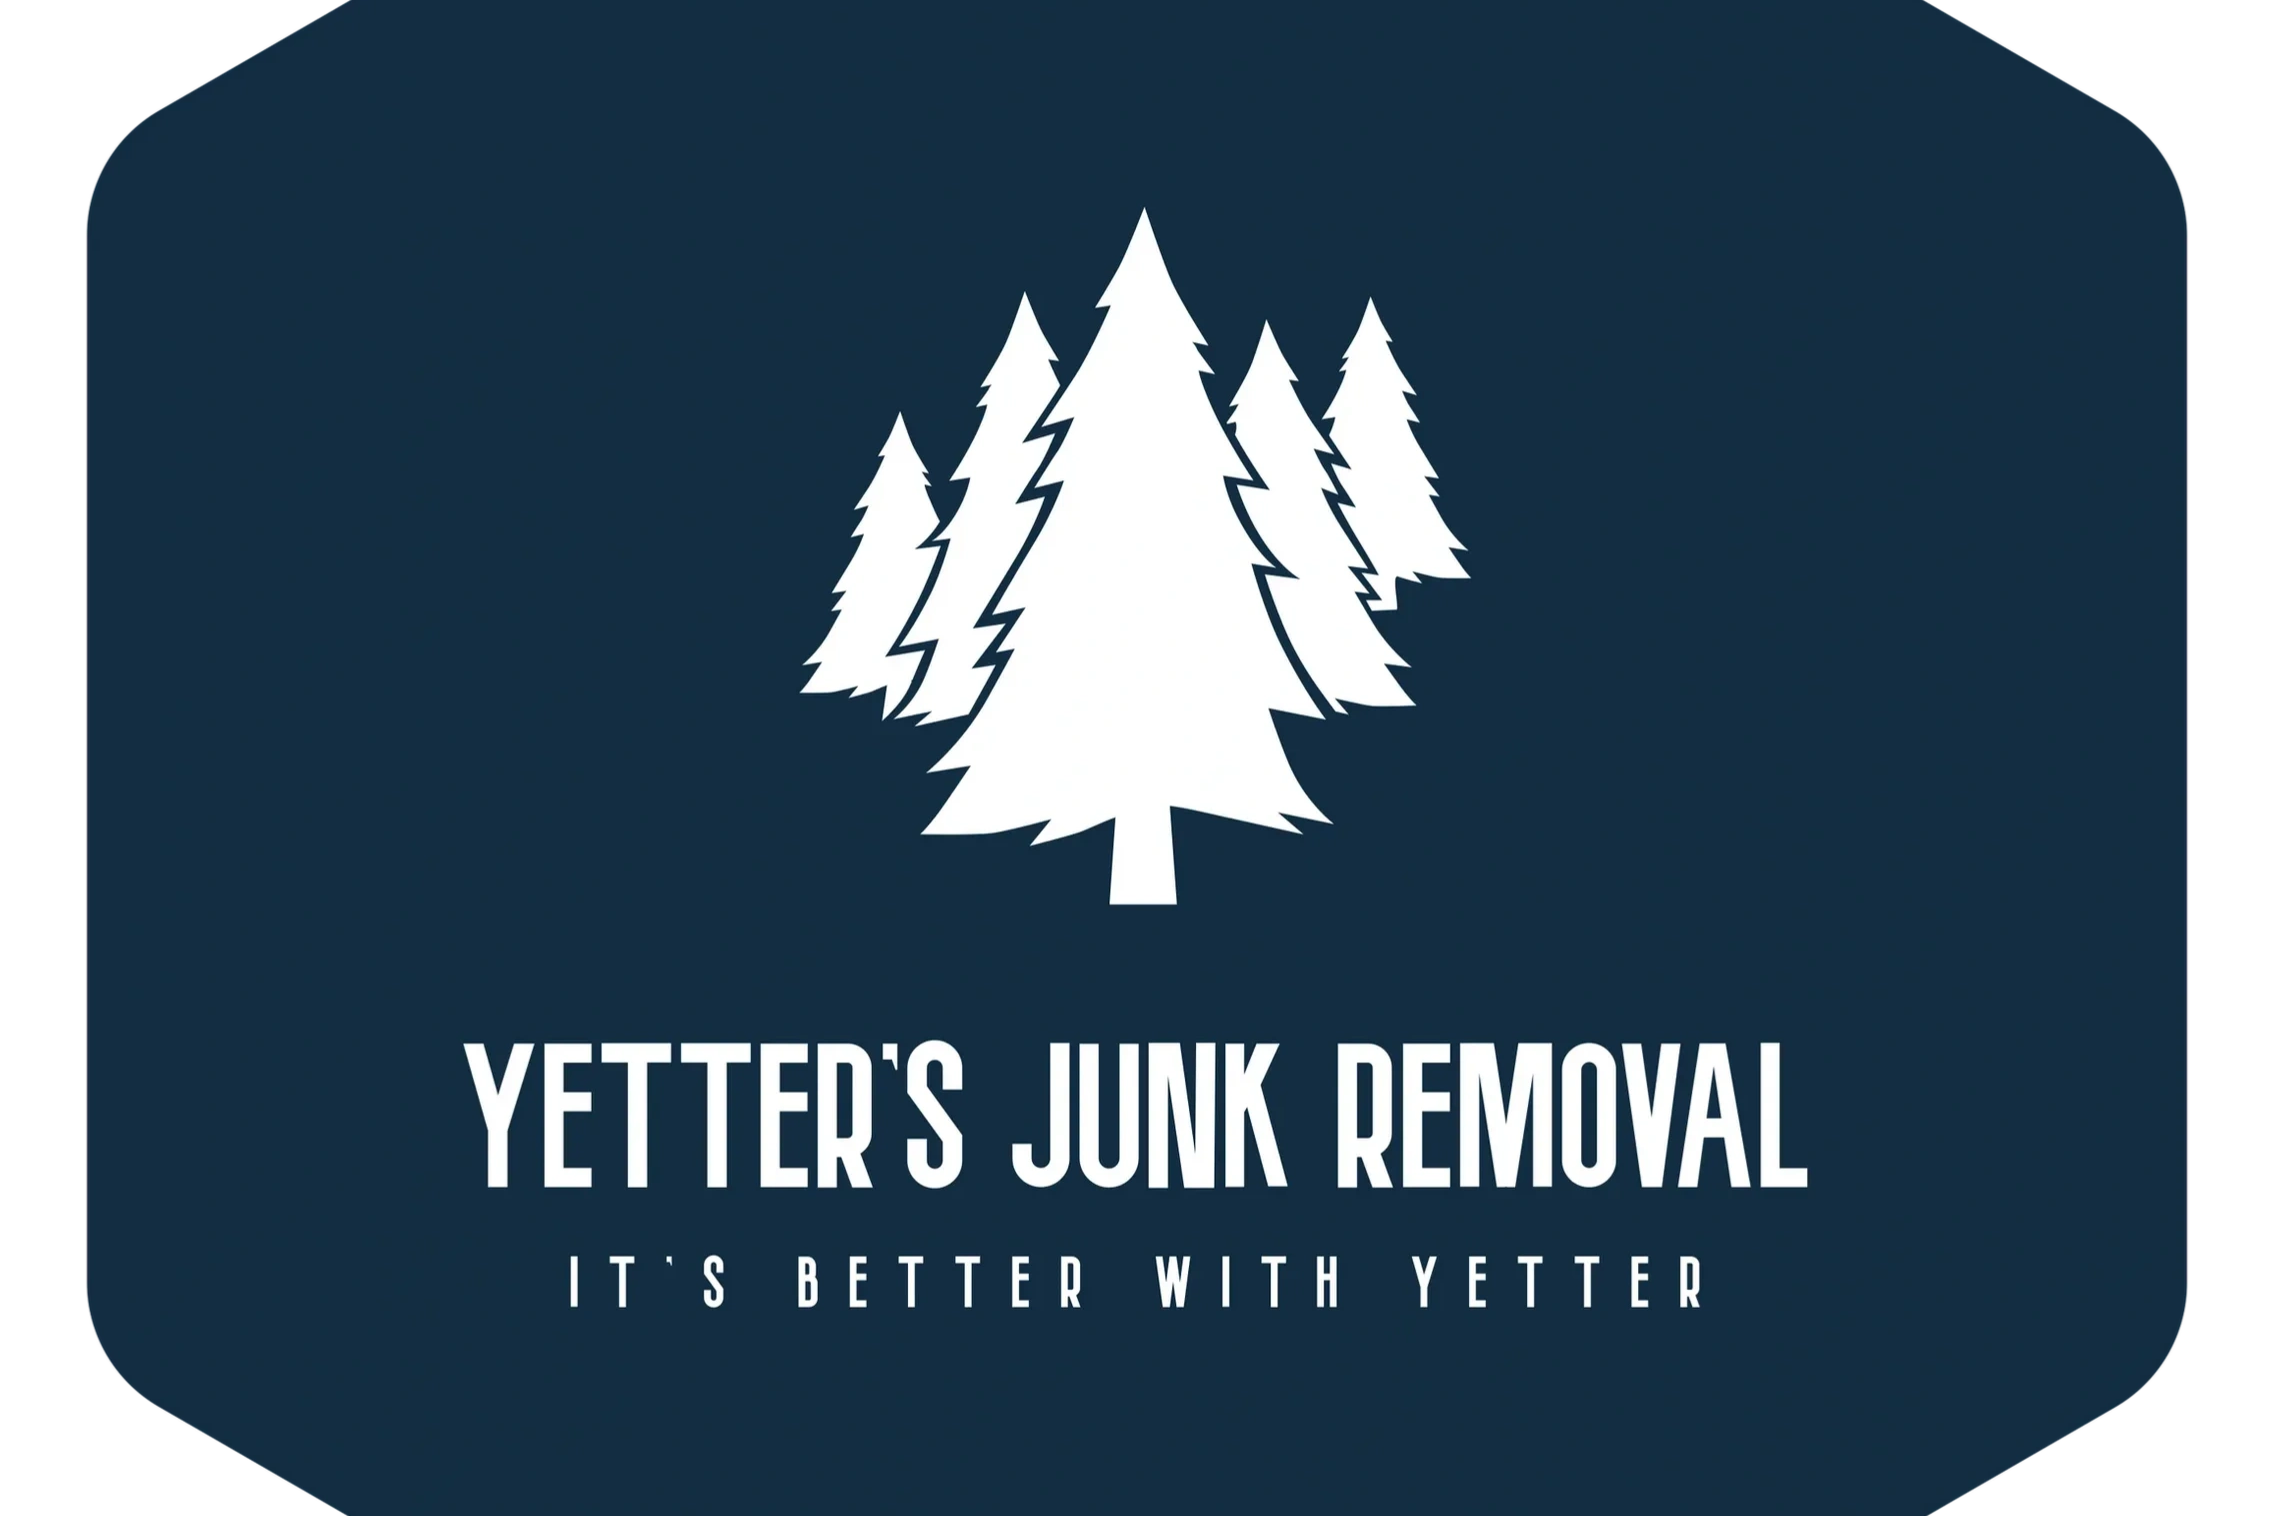 Gig harbor junk removal logo